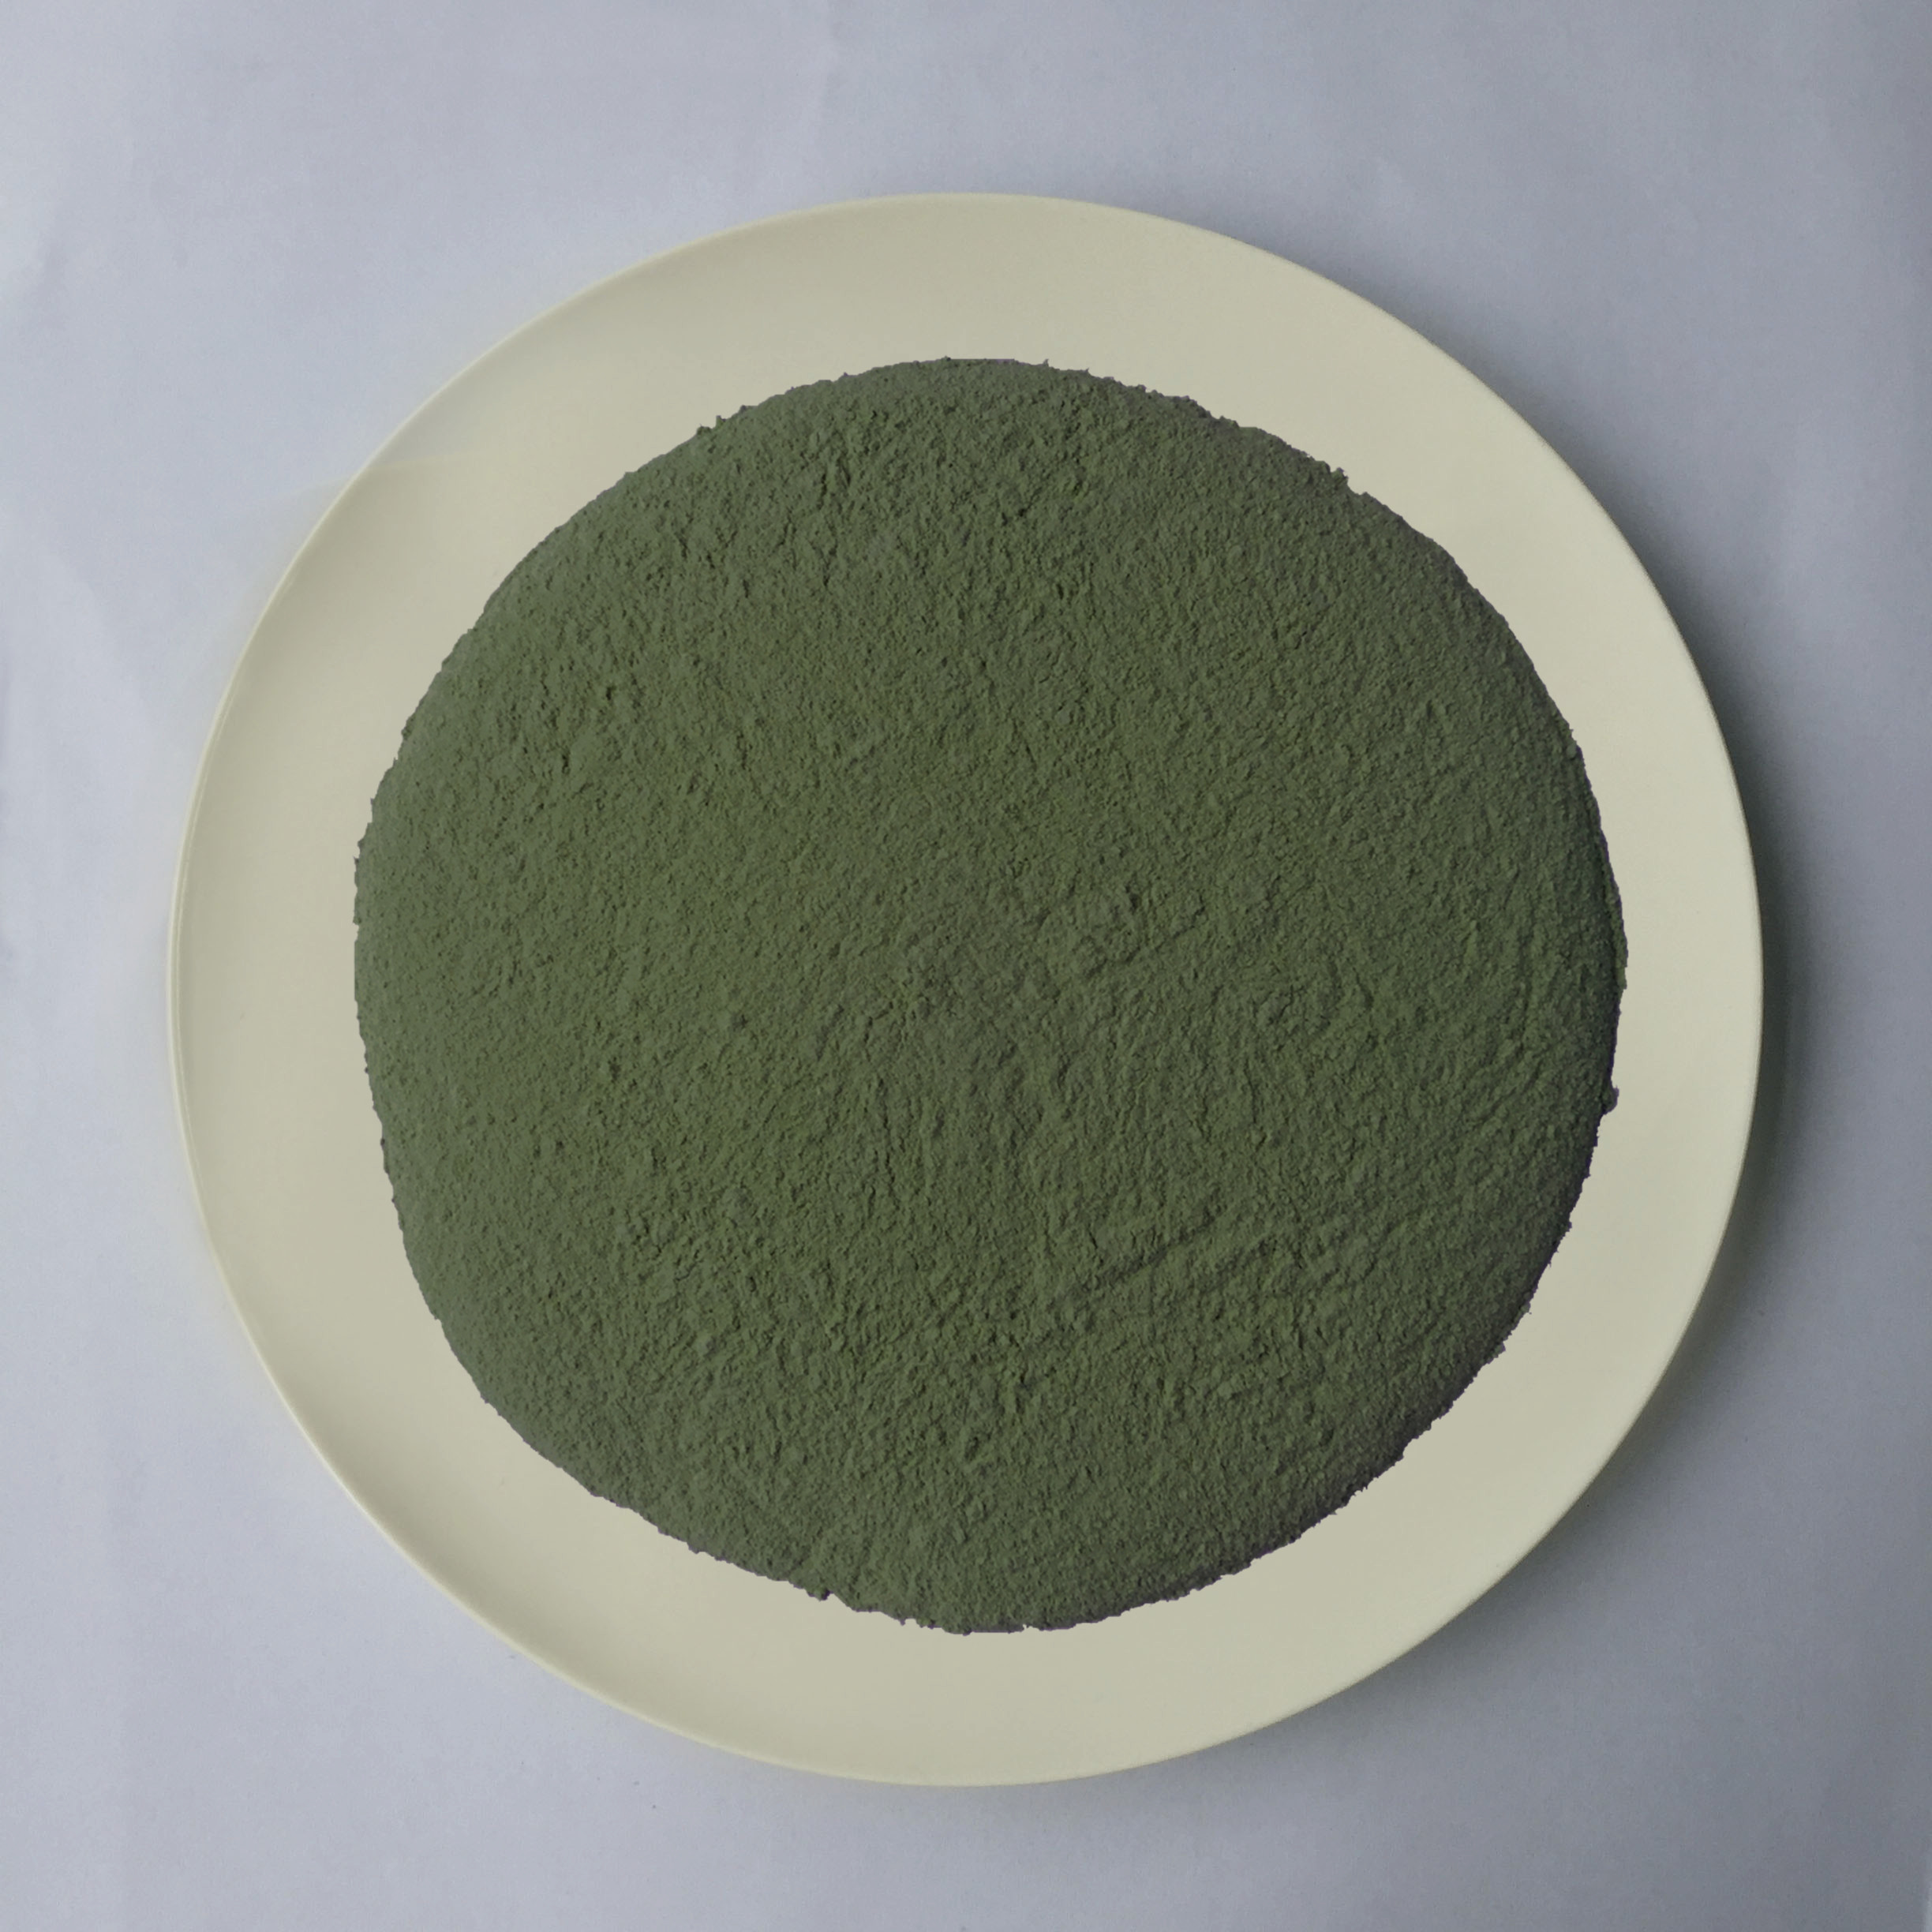 Qualité de moulage d'écurie de poudre de mélamine en plastique vert-foncé de matière première